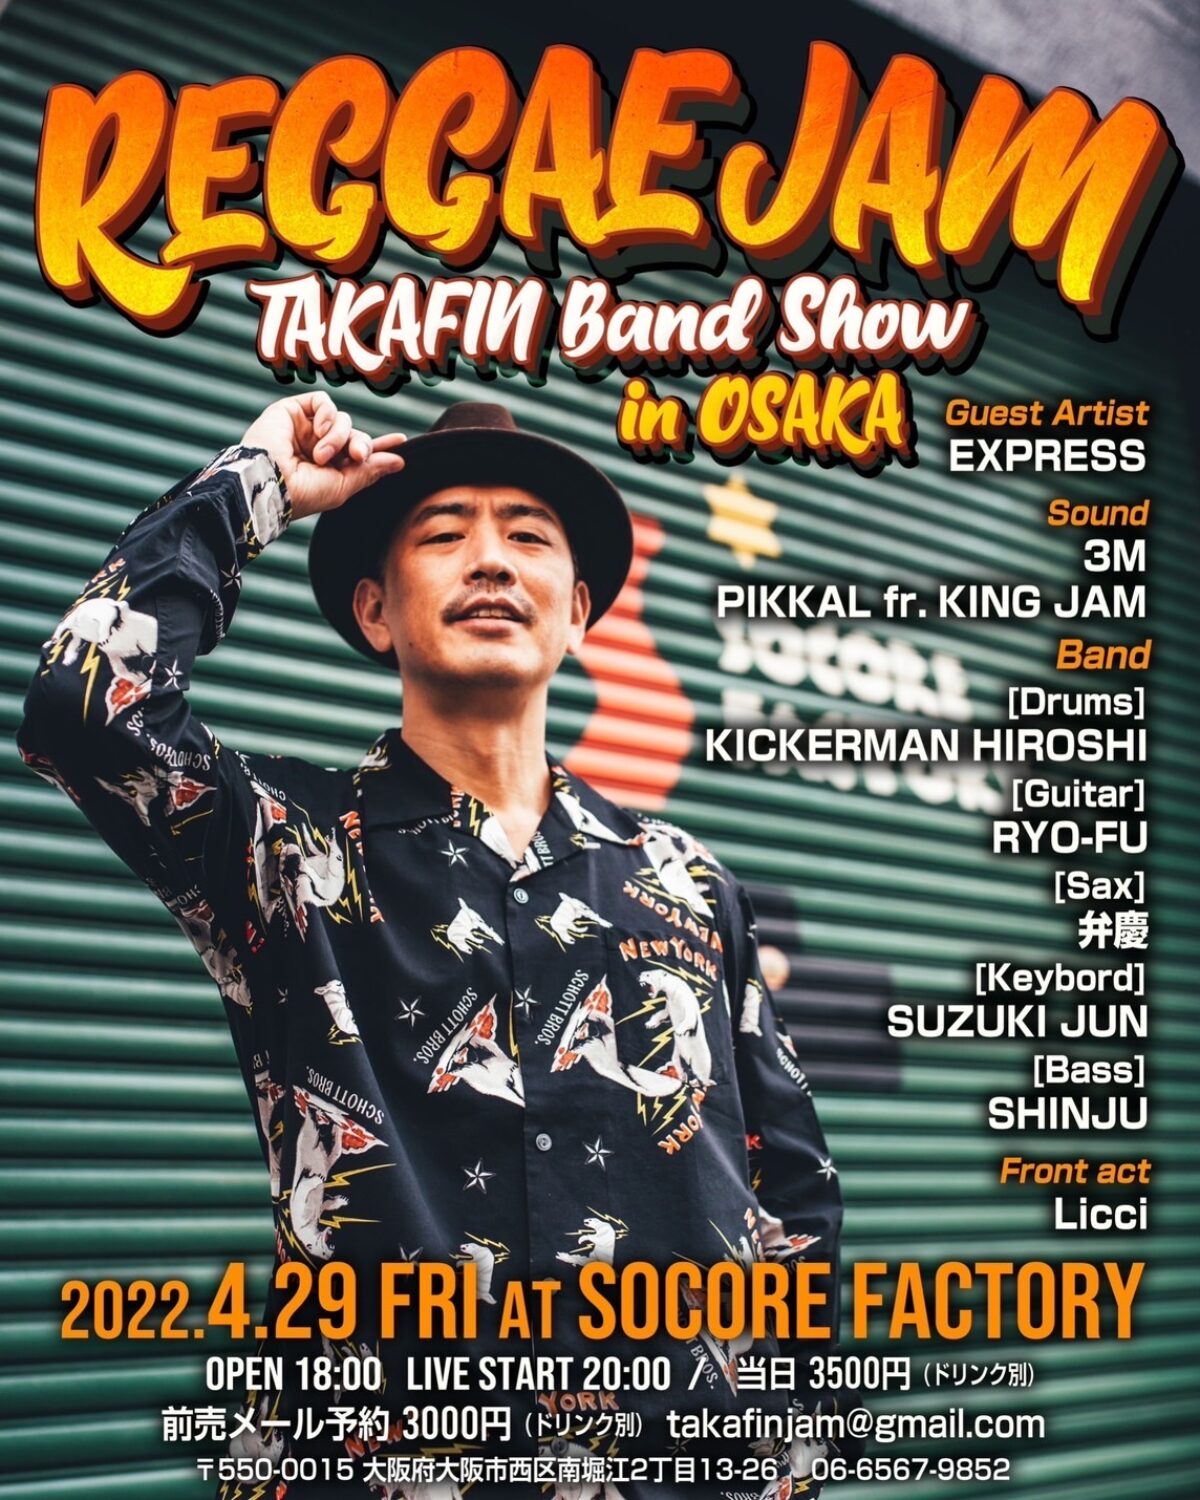 REGGAE JAM “TAKAFIN Band Show” in OSAKA ライブ